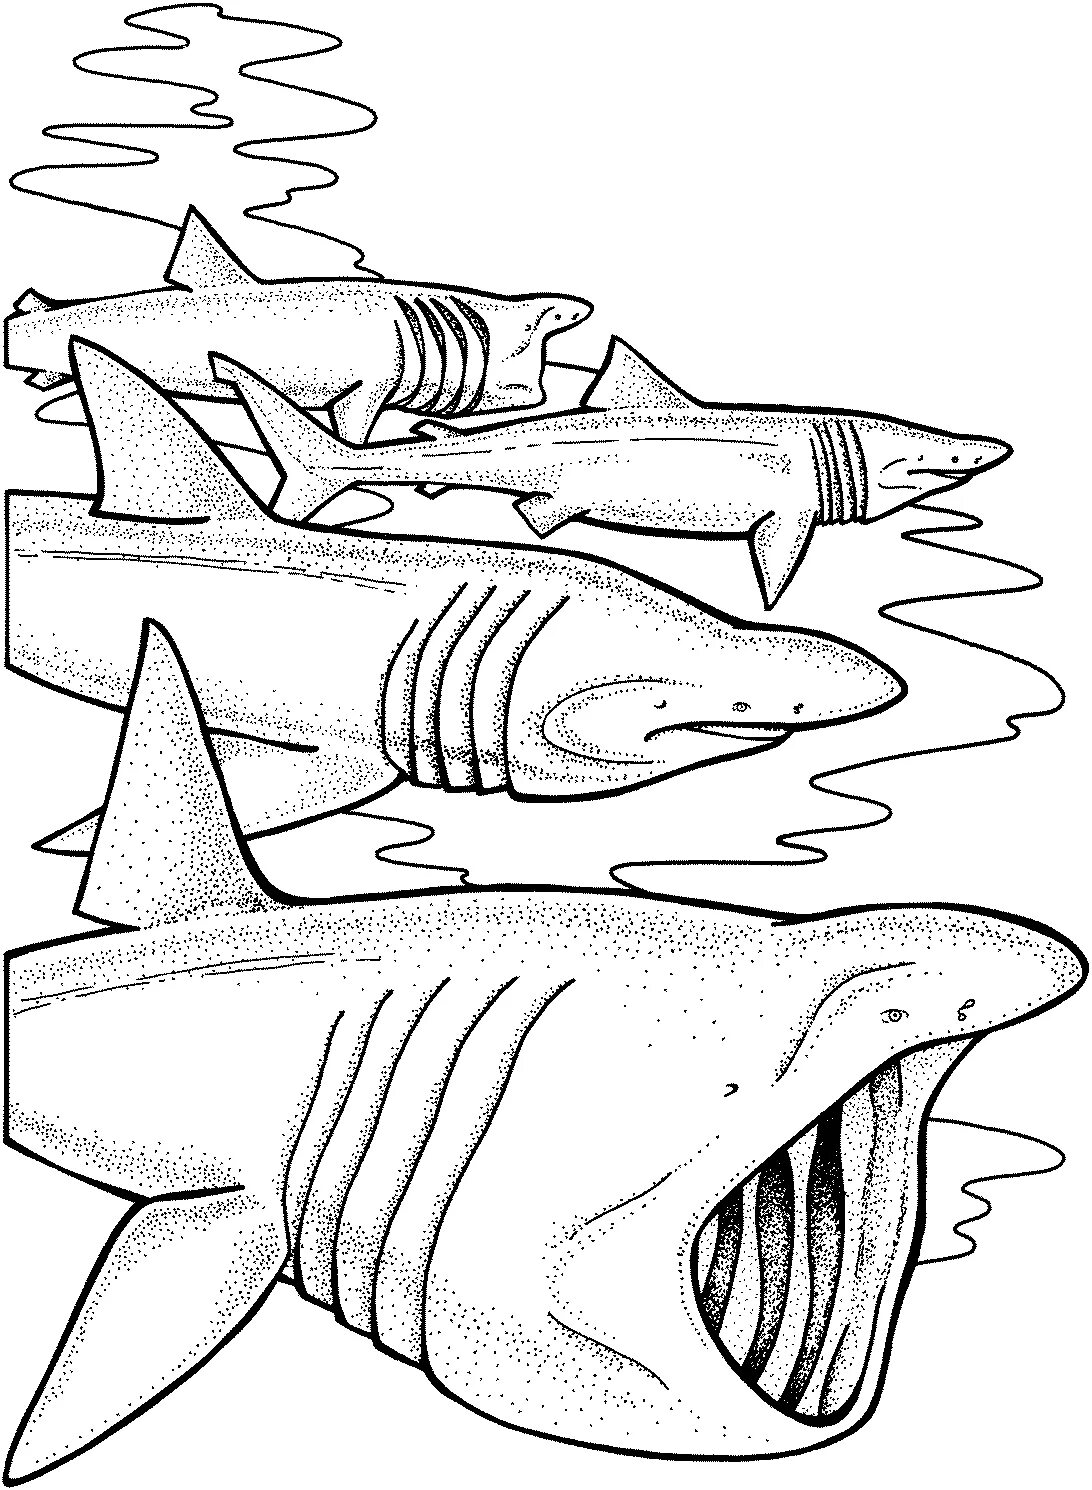 Раскраски акула. Раскраска акула МЕГАЛОДОН. Акула раскраска для детей. Акула рисунок. Раскраска для мальчиков акула.